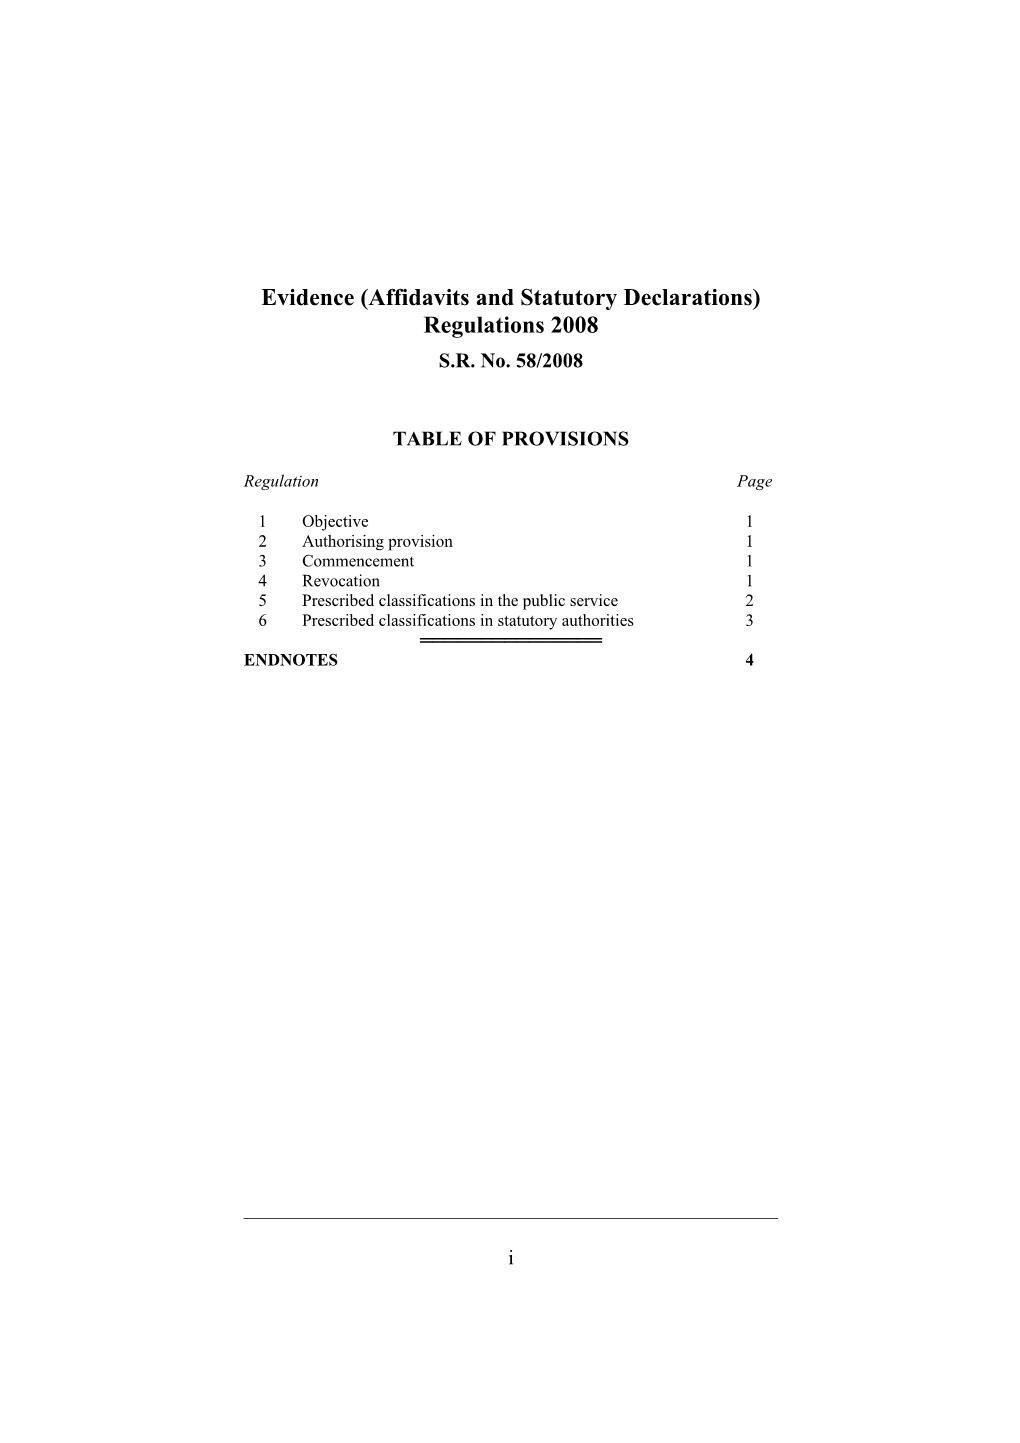 Evidence (Affidavits and Statutory Declarations) Regulations 2008